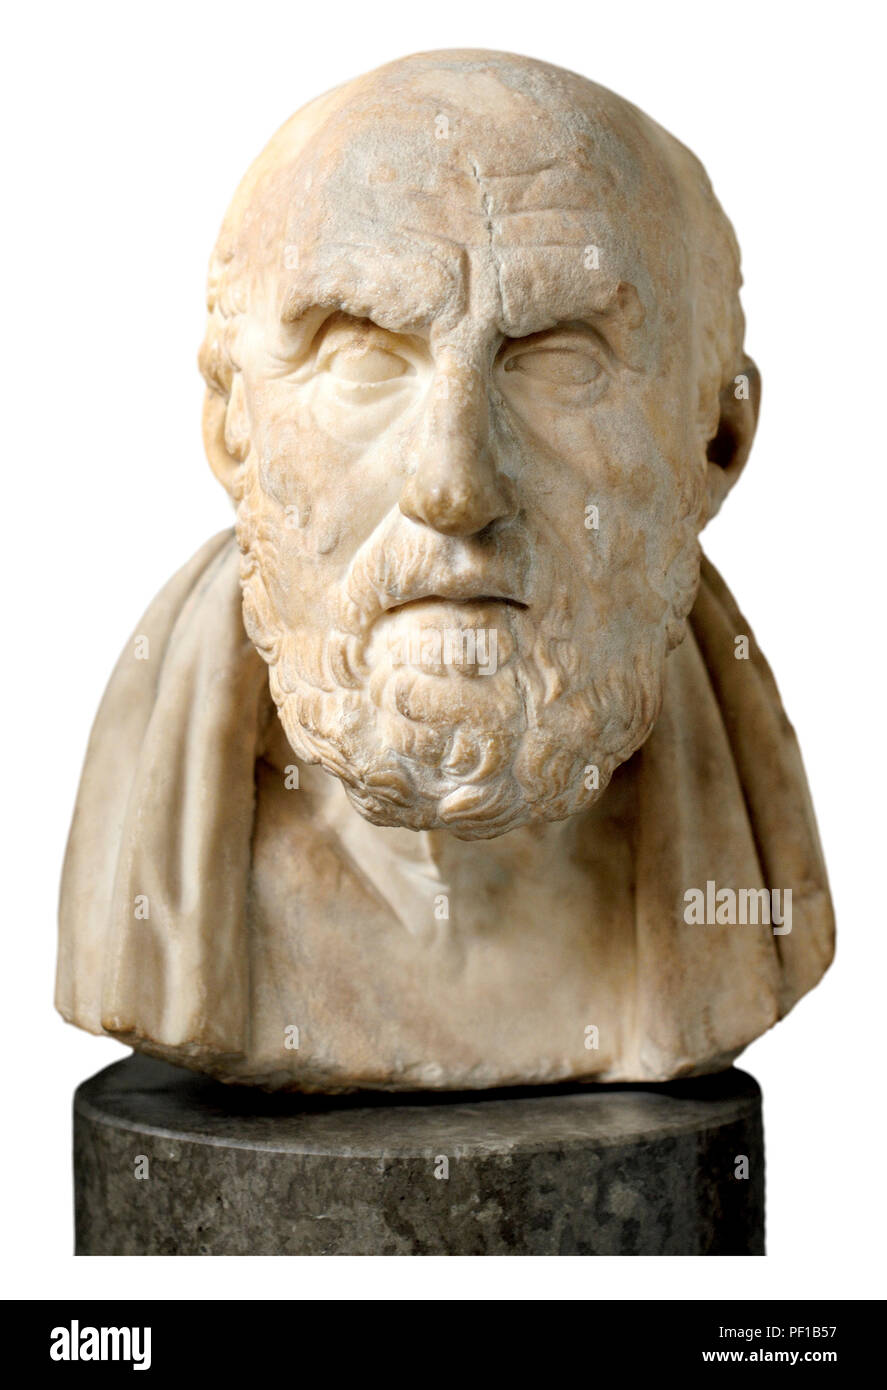 Buste en marbre de Chrysippos (philosophe grec : c280-205 BC) membre de l'École de la philosophie stoïcienne. British Museum, Bloomsbury, London, England, UK. Banque D'Images